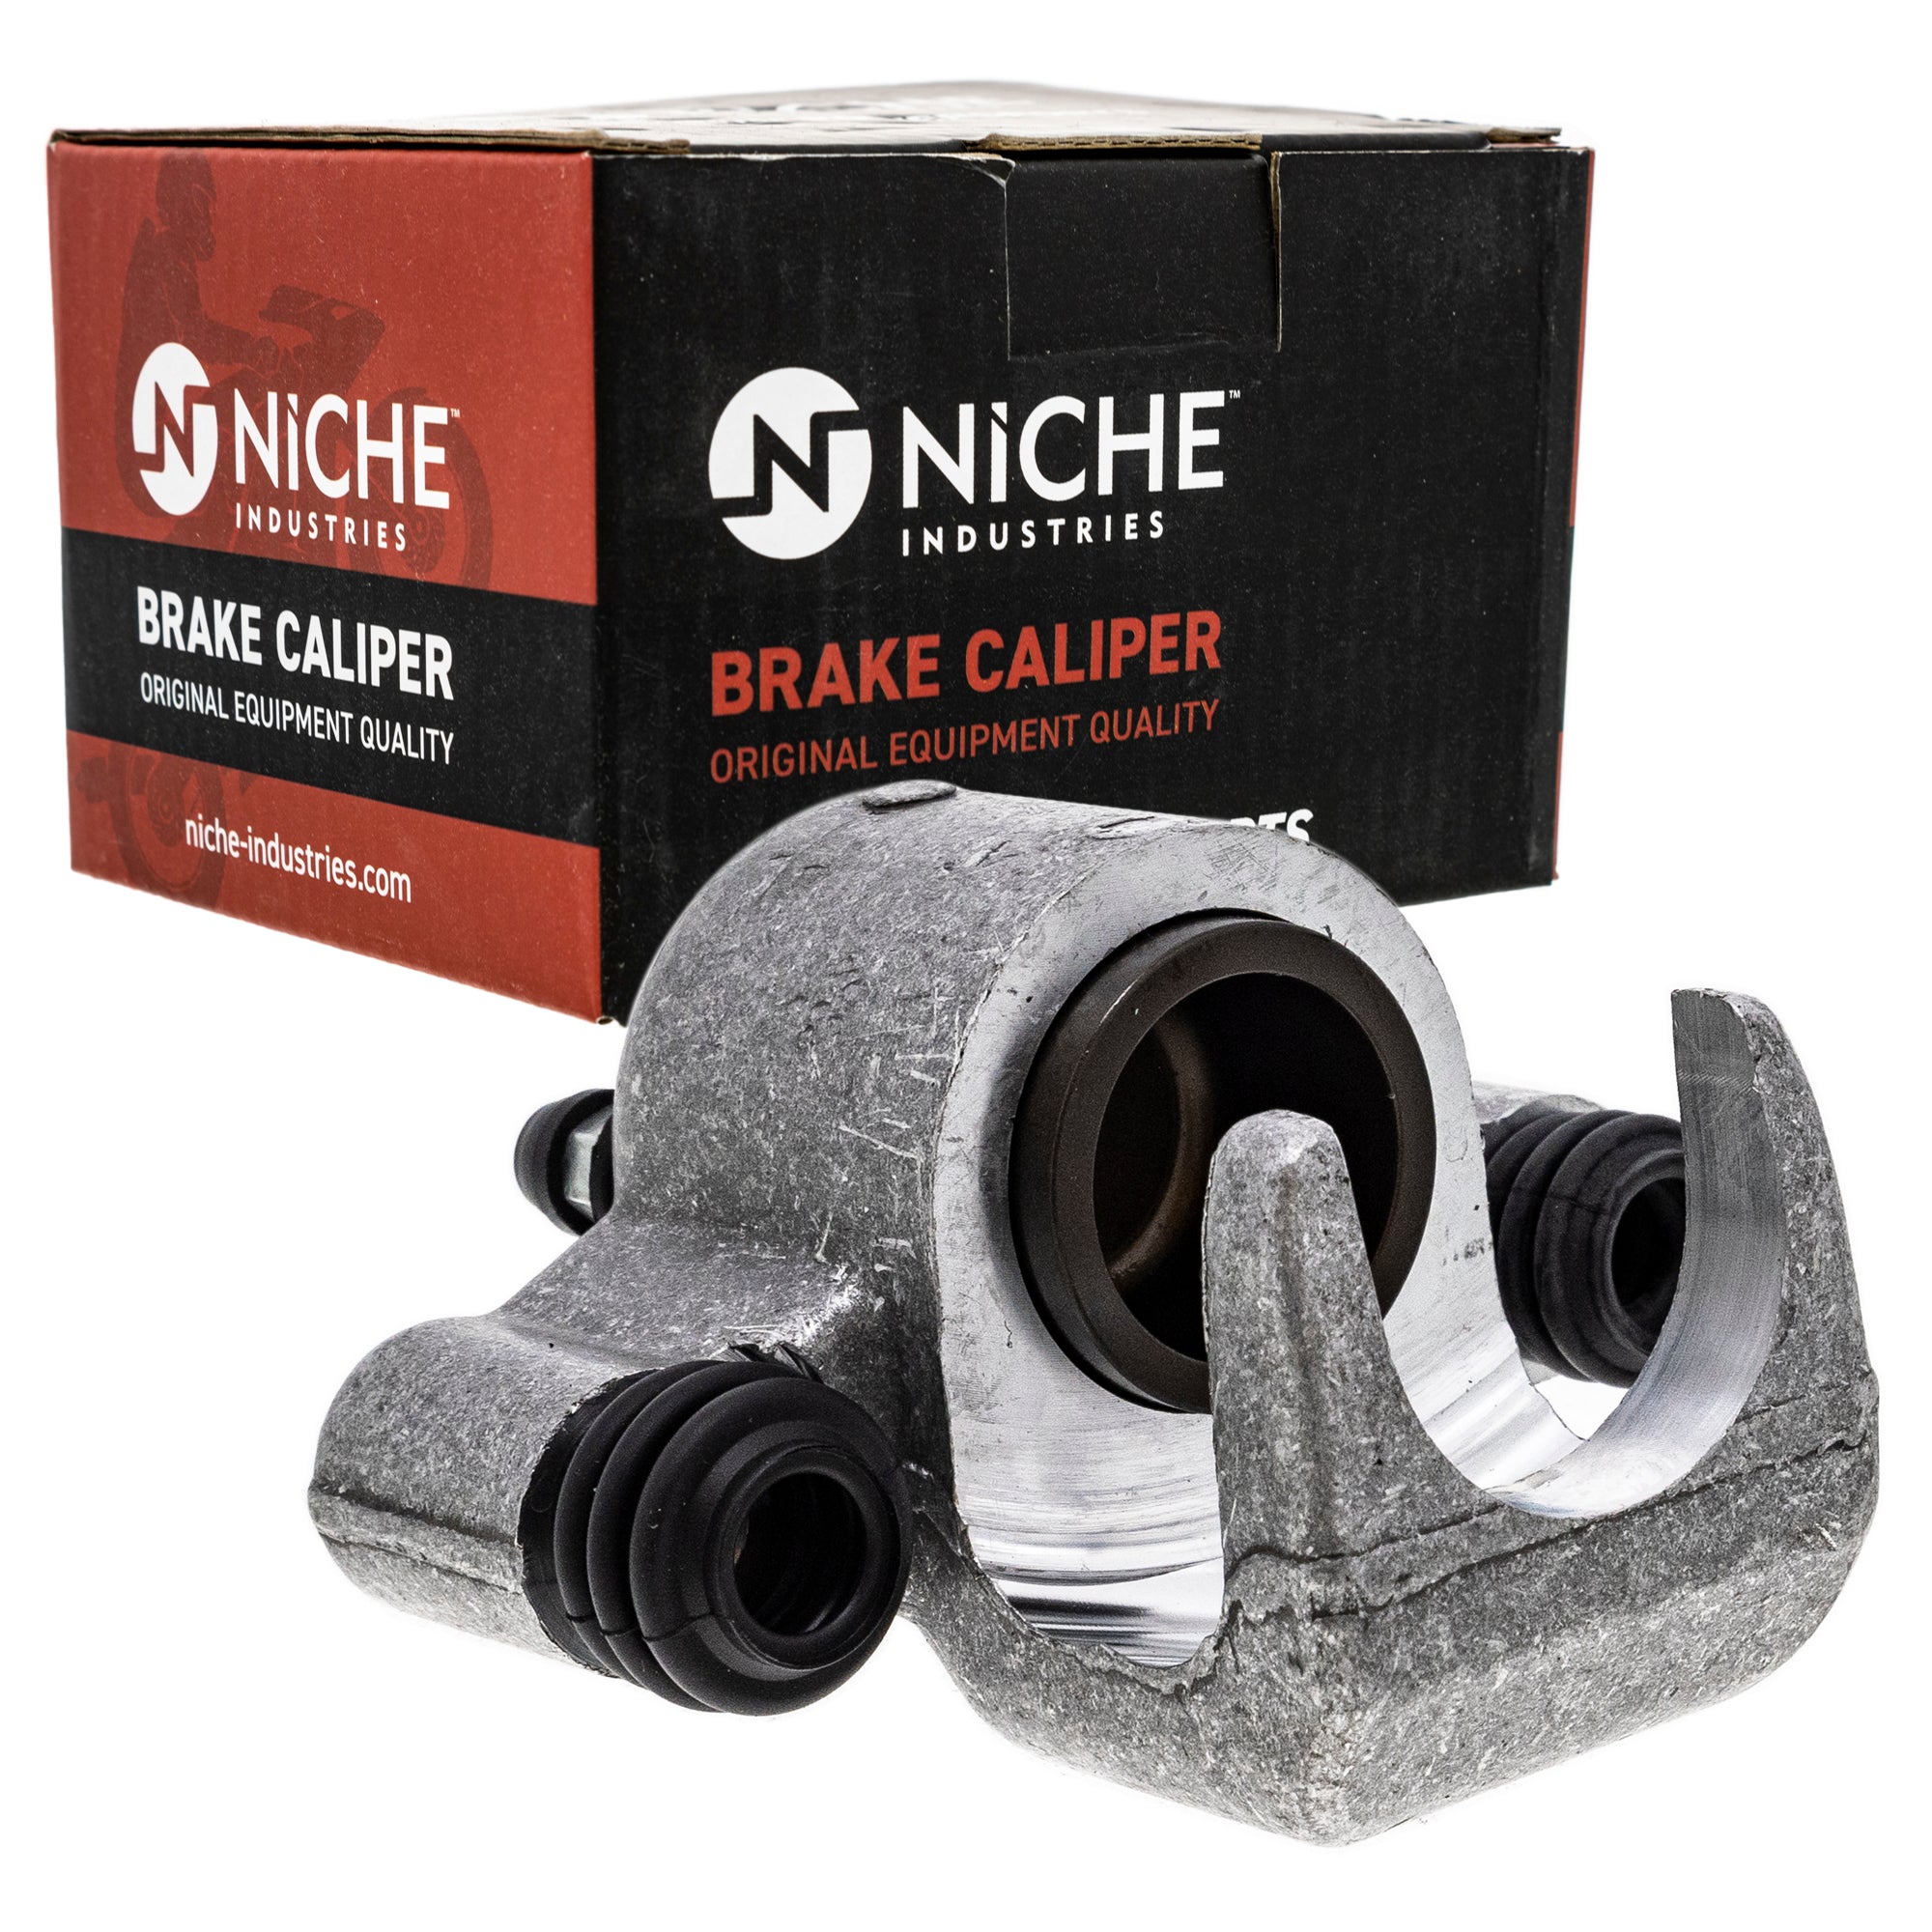 NICHE MK1001036 Brake Caliper Kit